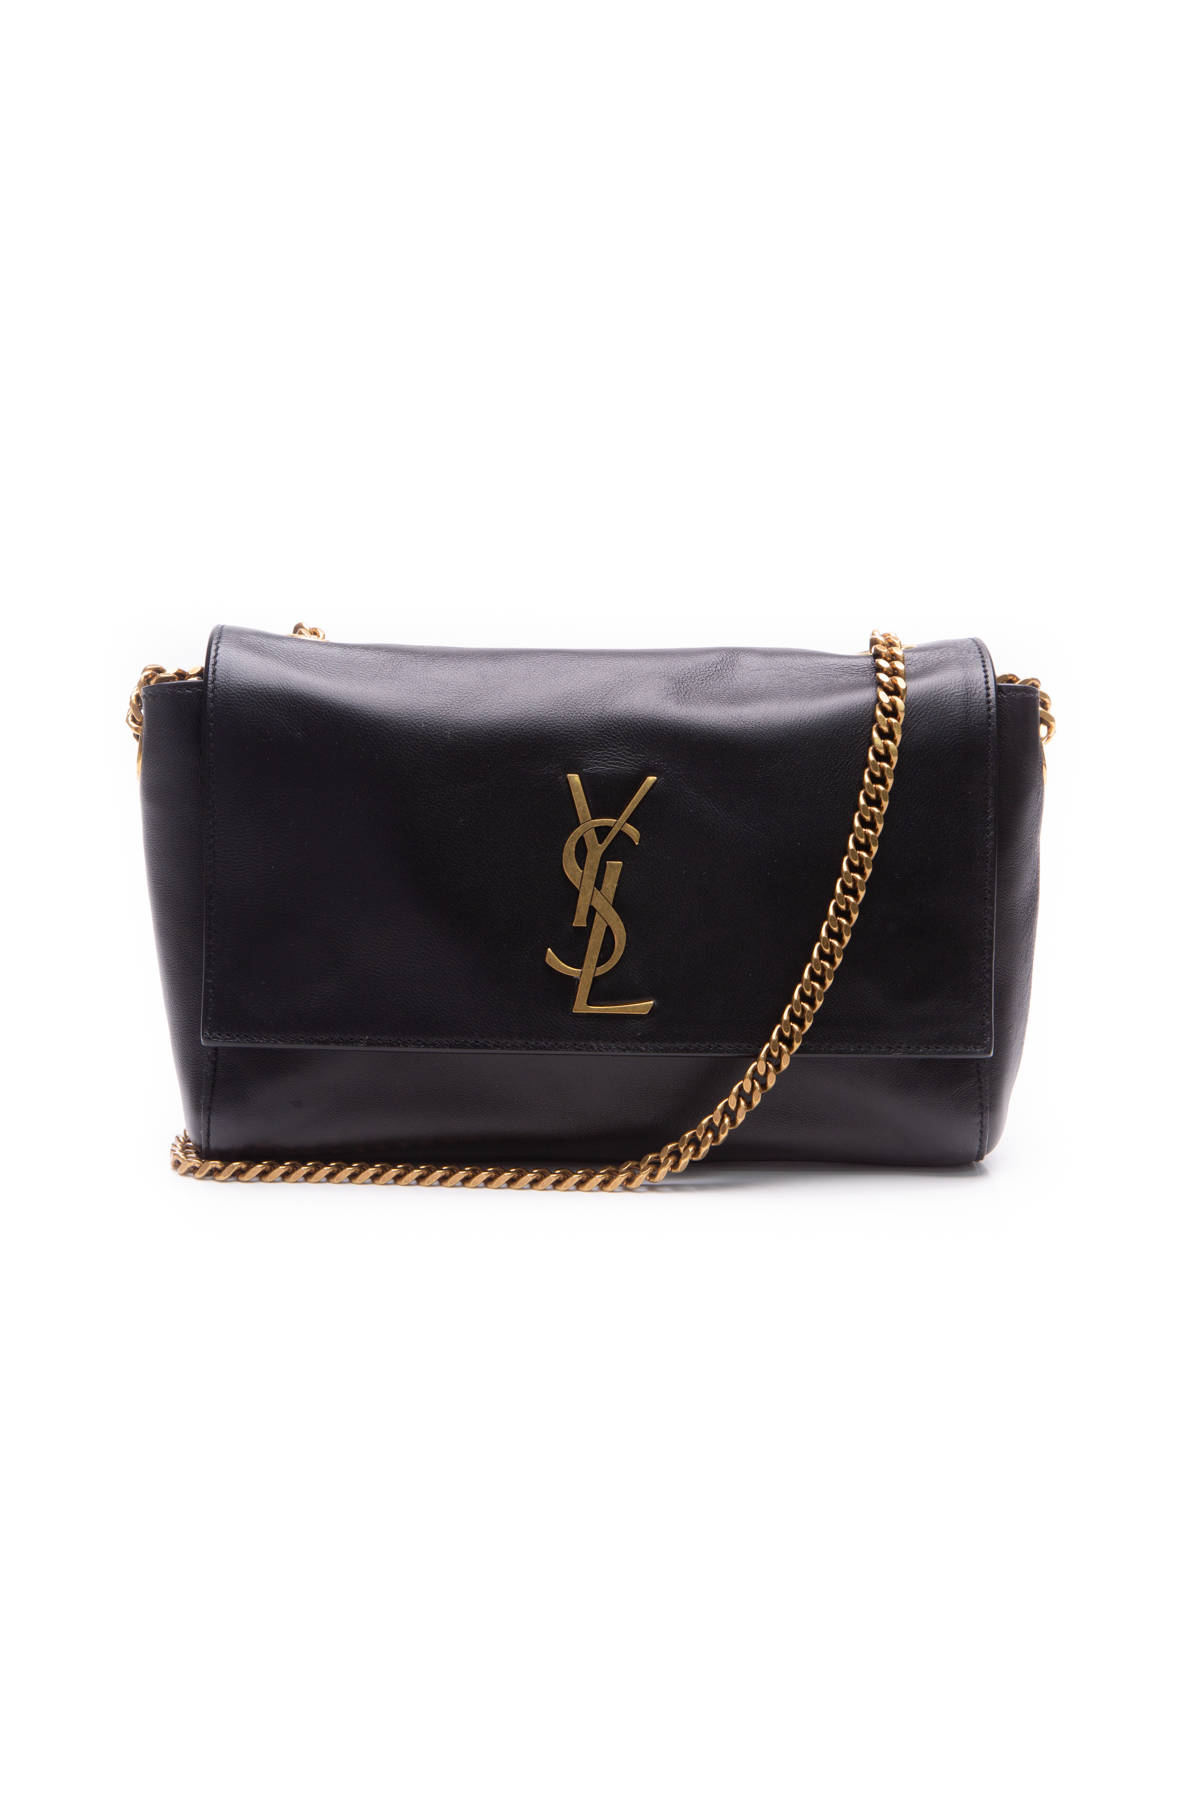 Louis Vuitton Lock Chain Bag  Black Louis Vuitton Monogram Puffer